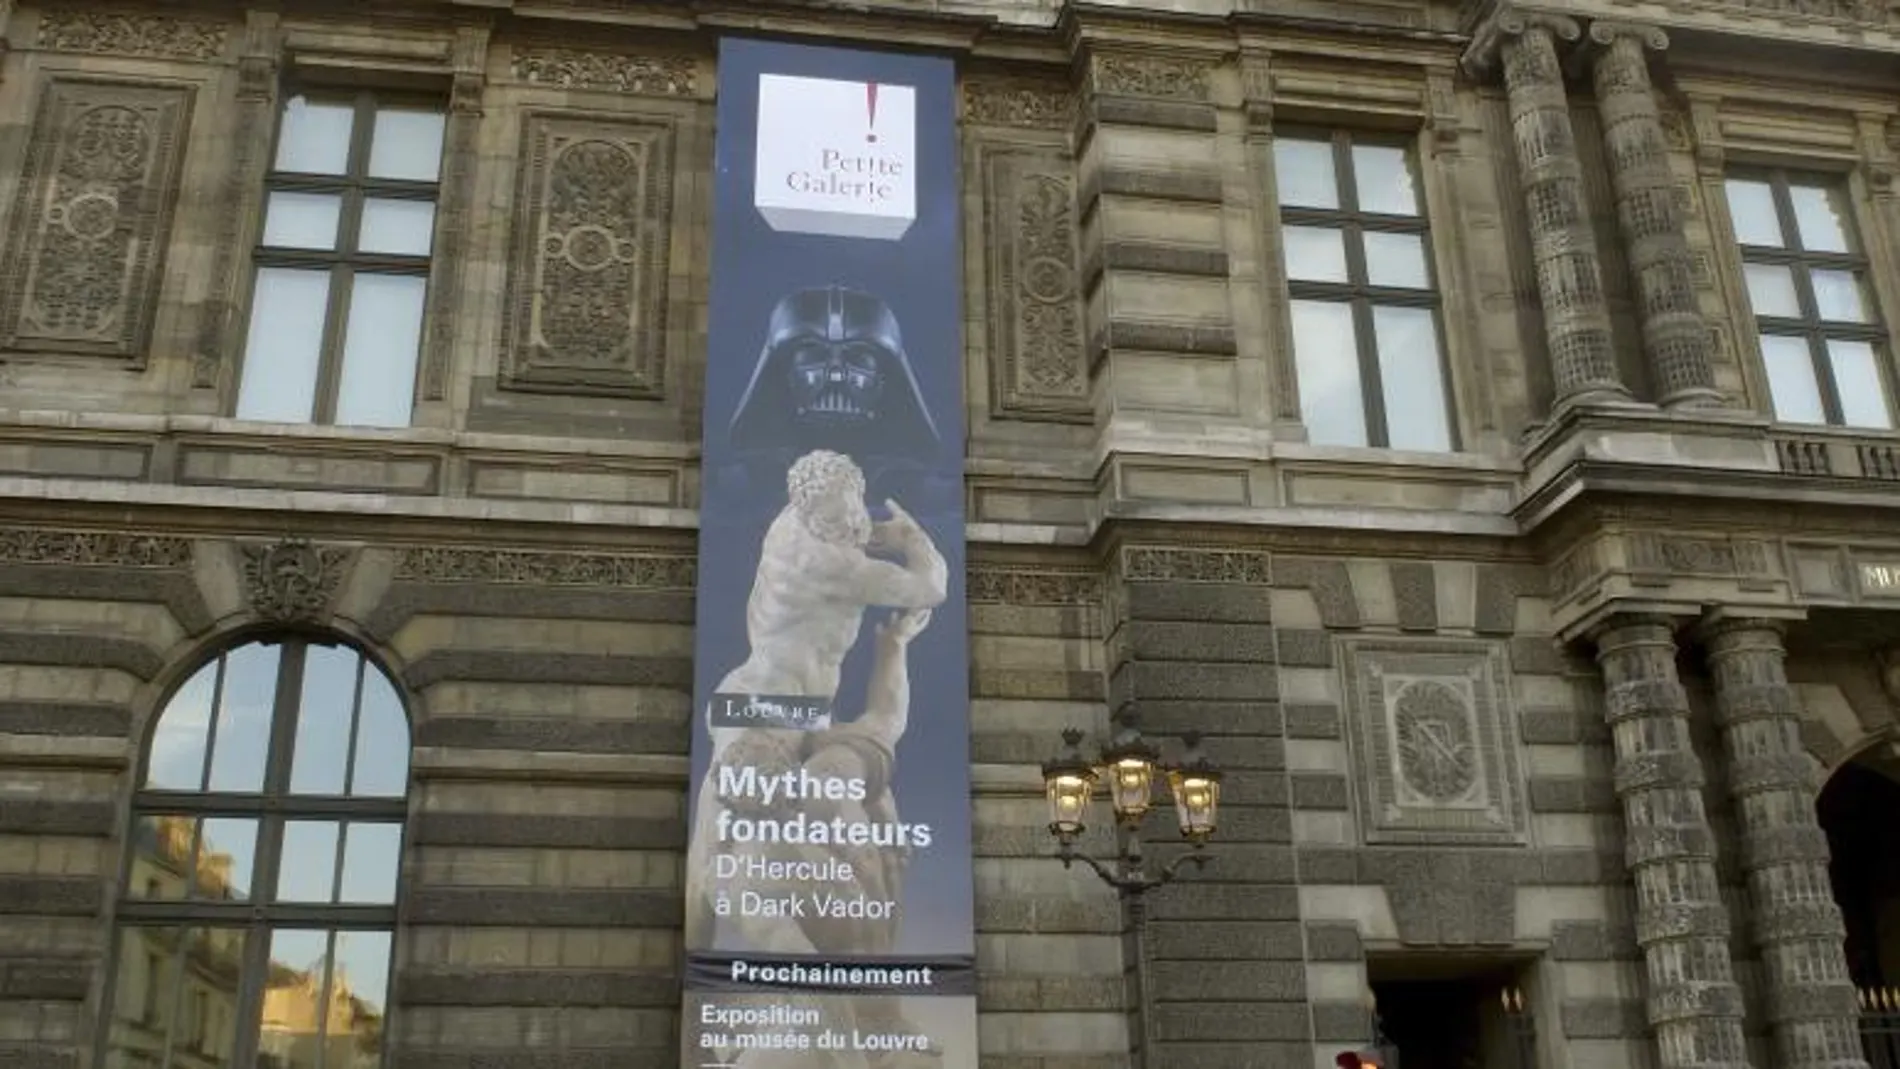 Fachada del Louvre en la calle Rivoli, donde se anuncia la exposición "Mitos fundadores: De Hércules a Darth Vader"